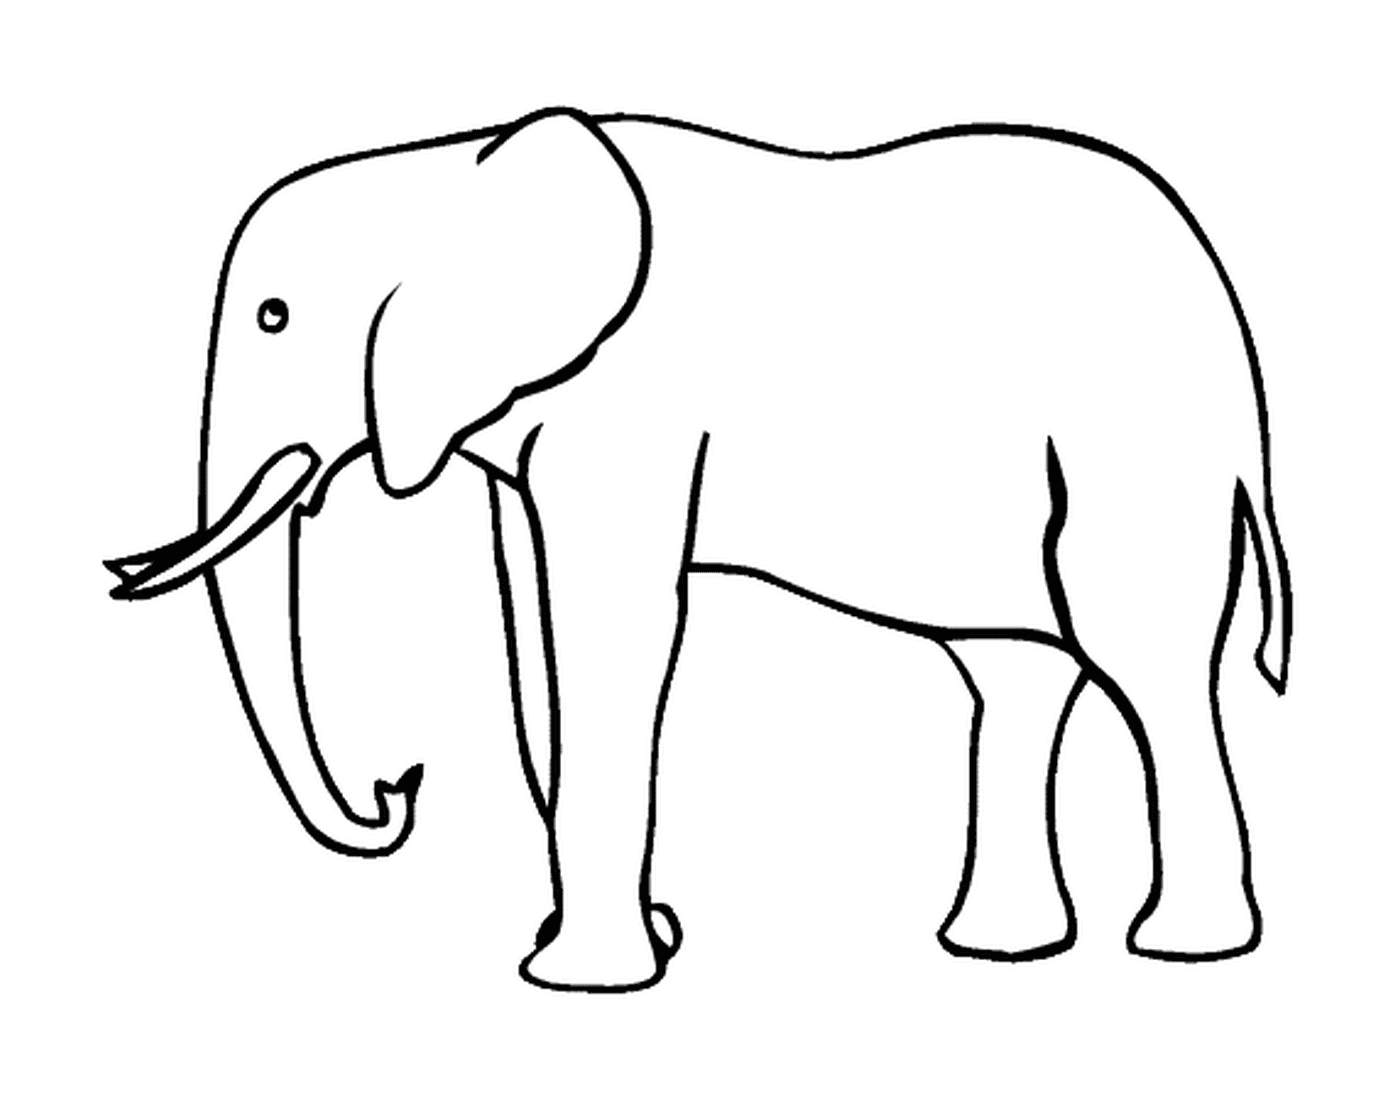  Una silhouette di elefante con zanne 